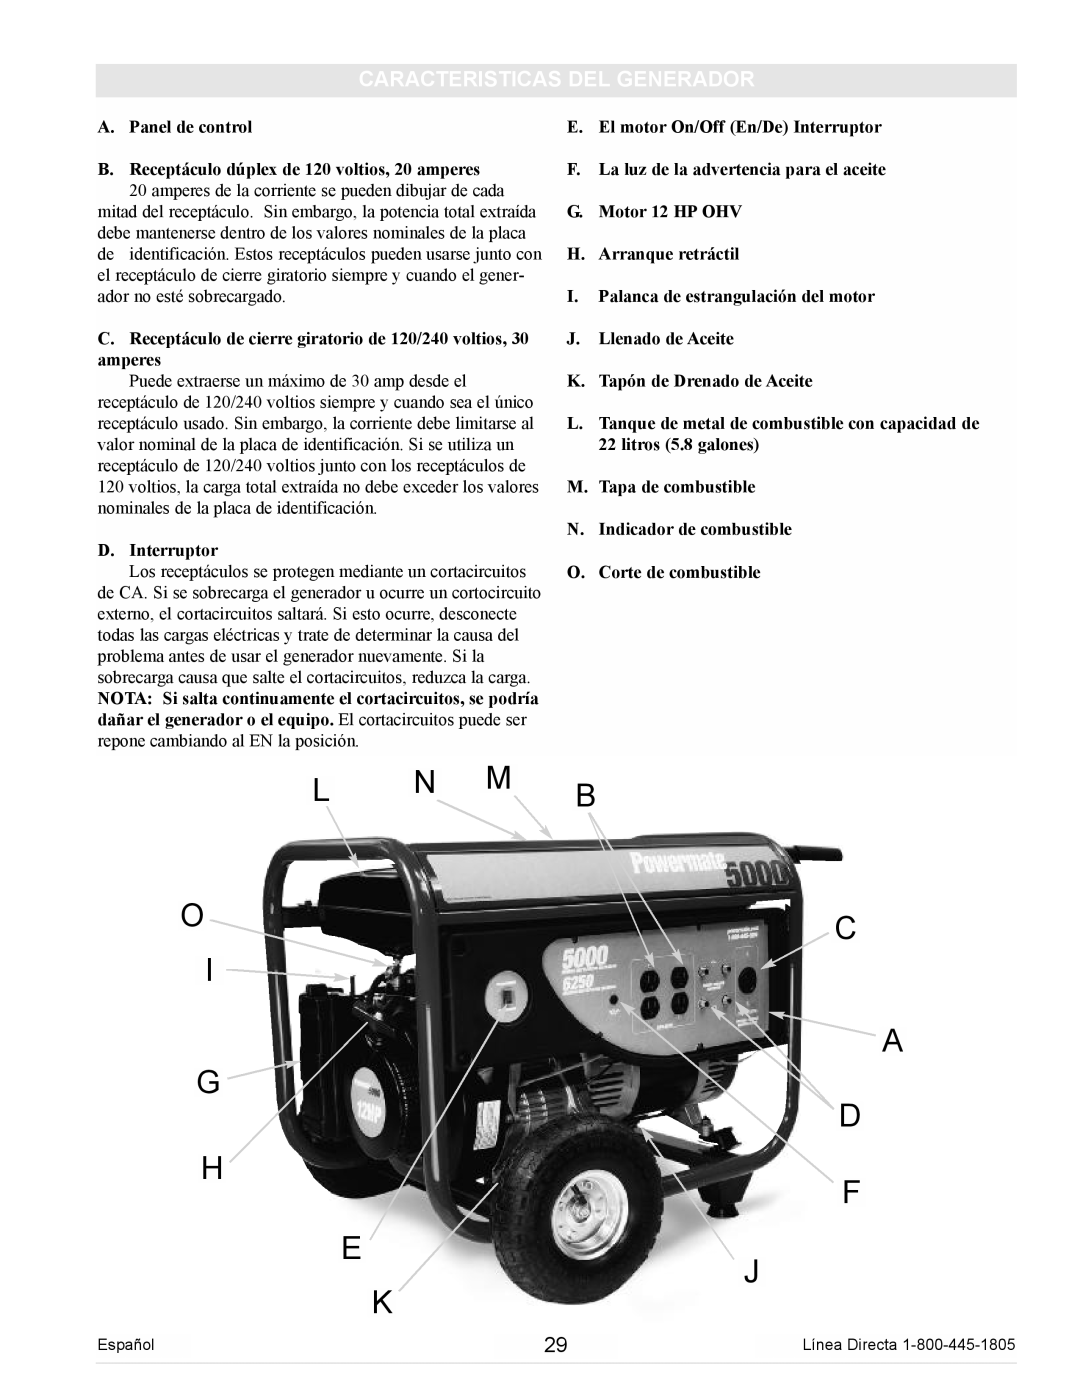 Powermate PM0105000 manual L N M O I G H E K, B C A D F J, Caracteristicas Del Generador 